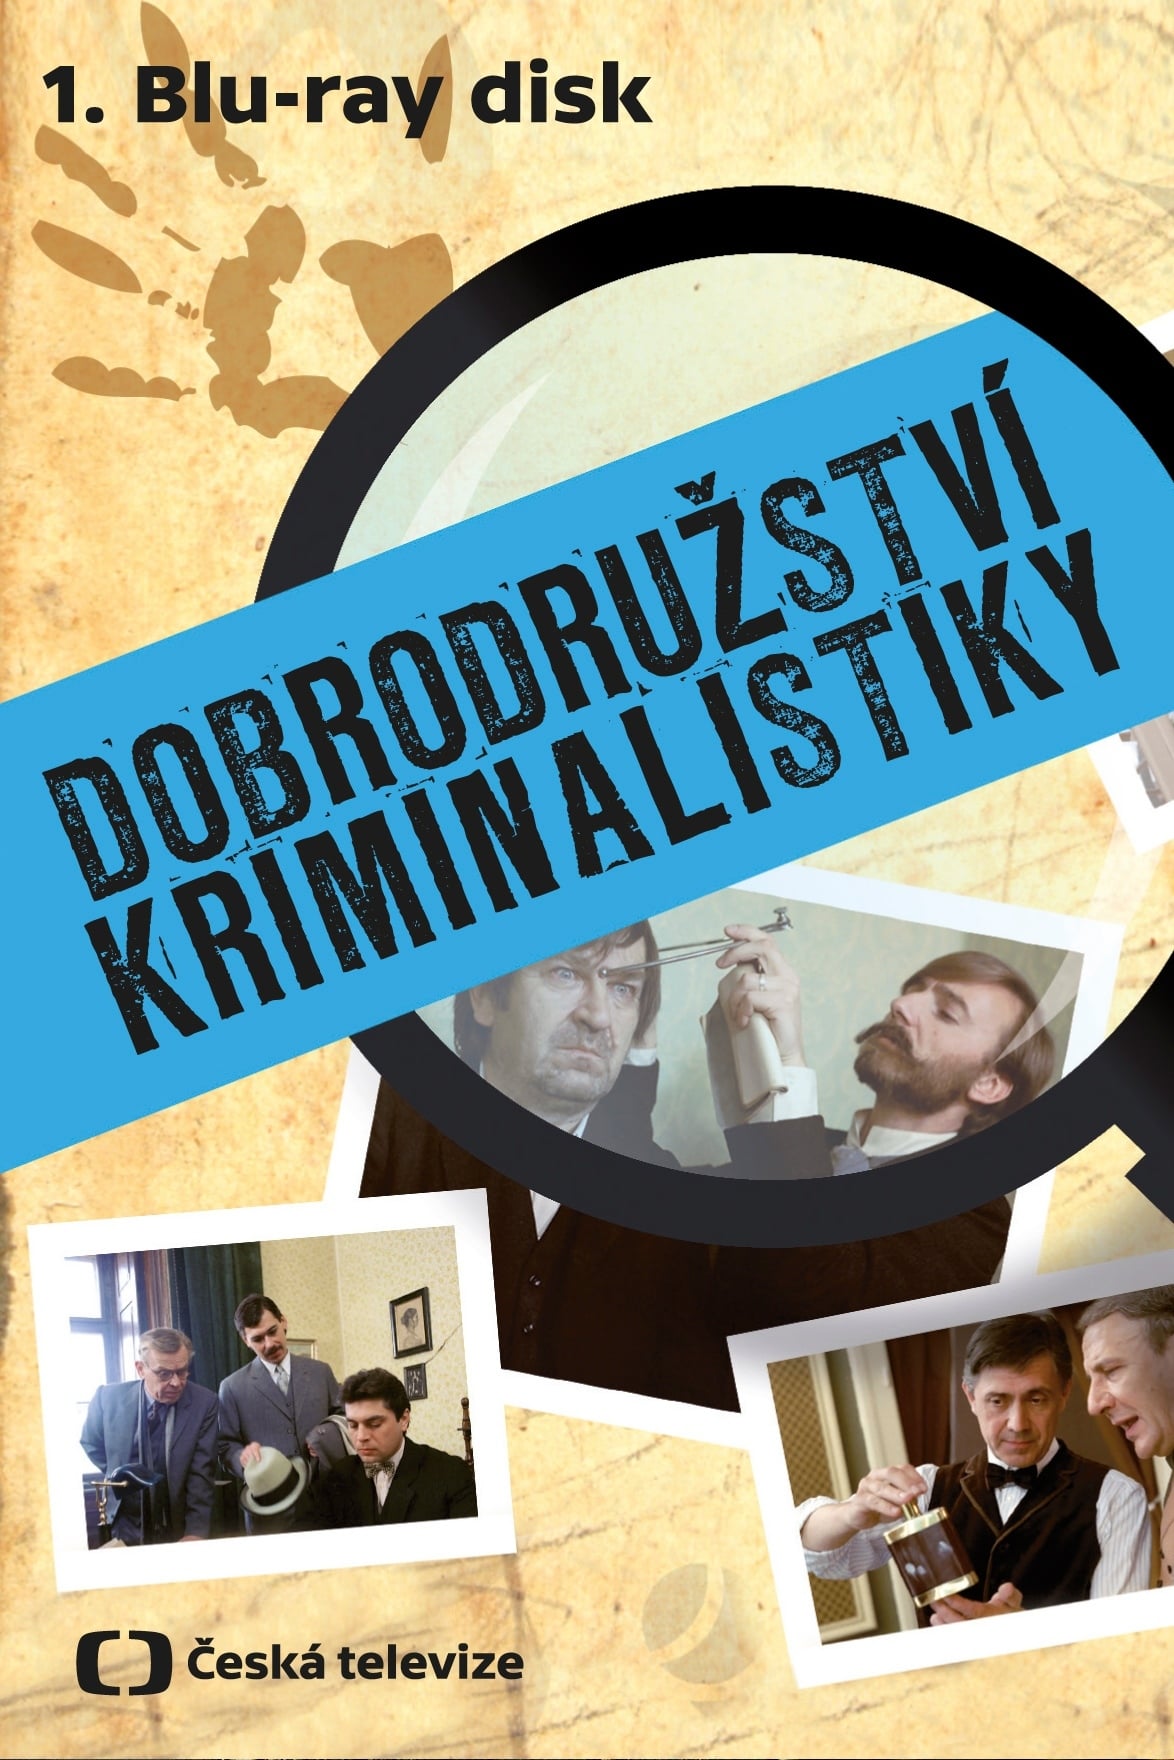 Plakát pro film “Dobrodružství kriminalistiky”